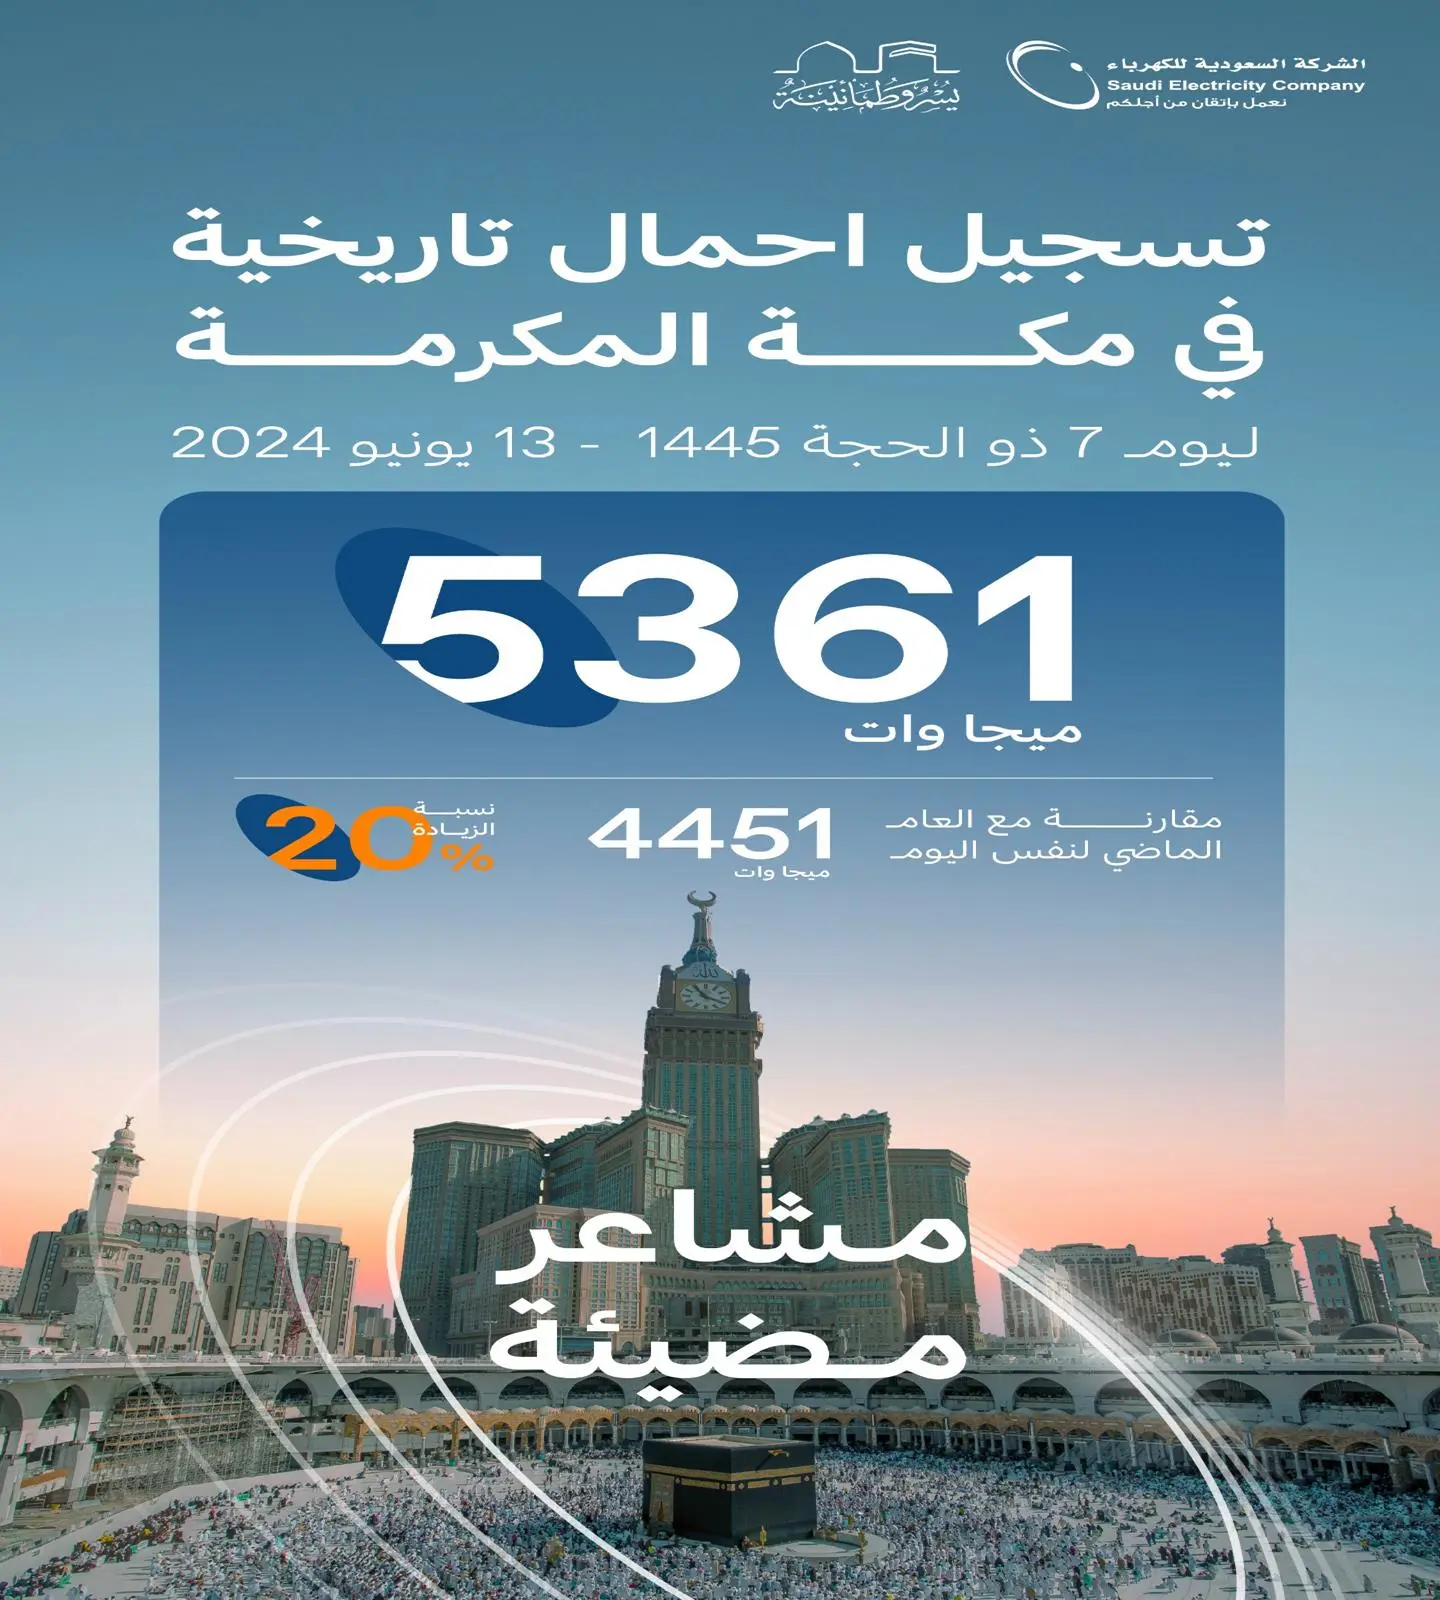 مكة المكرمة تسجّل اليوم أحمالاً كهربائية الأعلى في تاريخها بـ 5361 ميجاوات